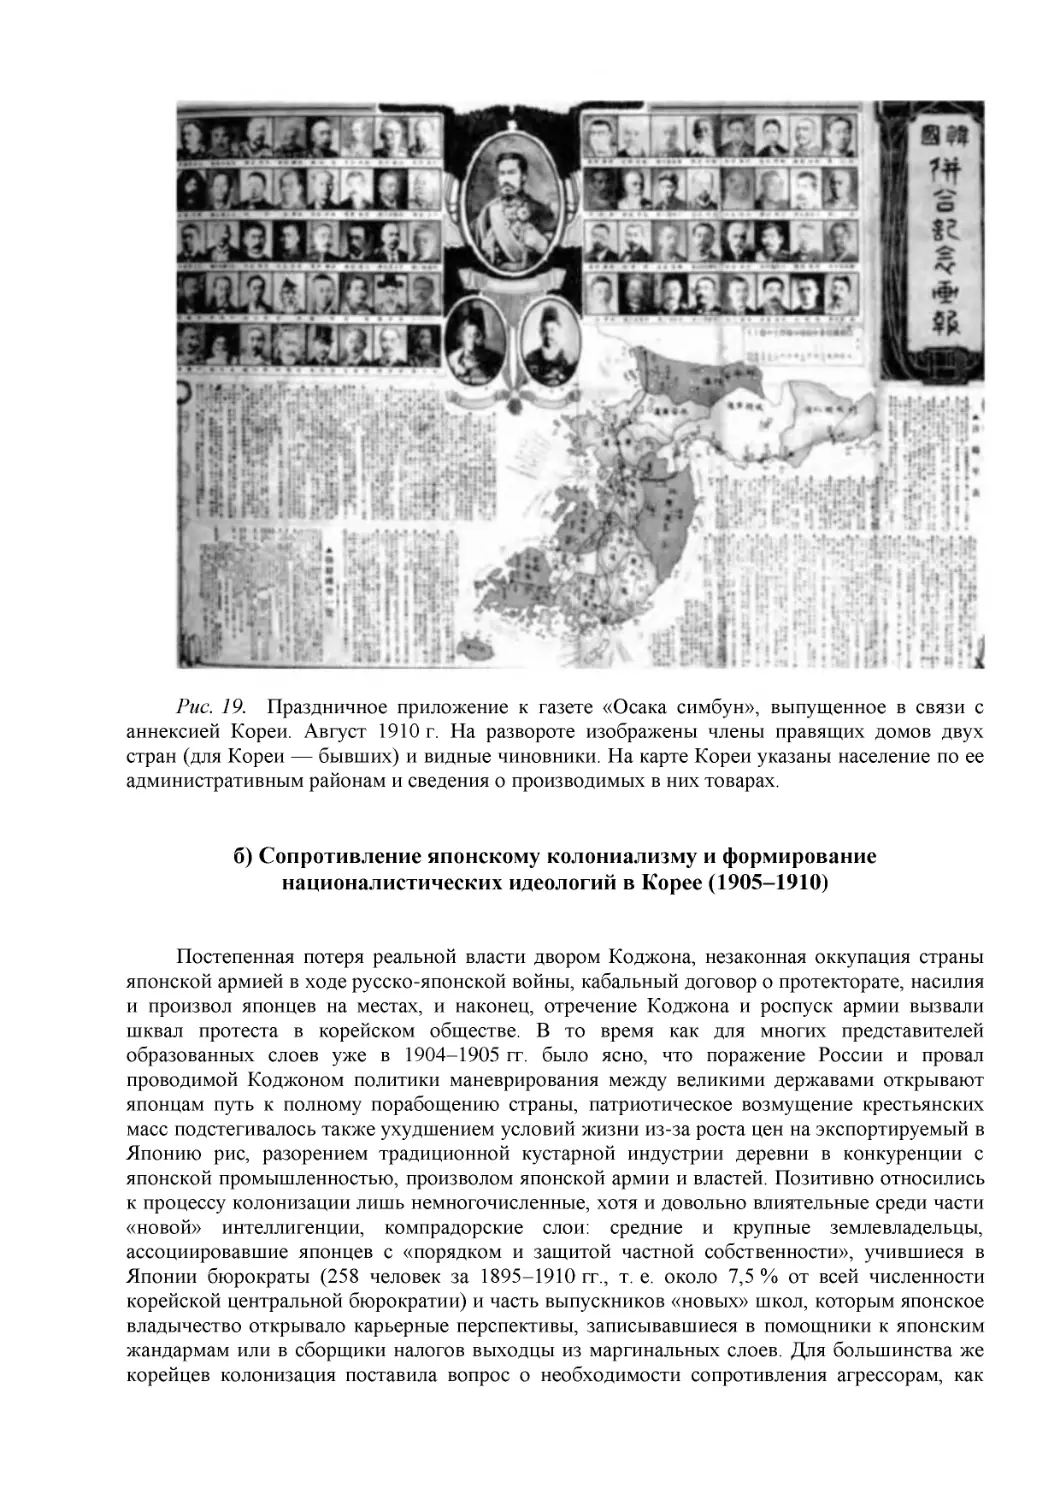 б) Сопротивление японскому колониализму и формирование националистических идеологий в Корее (1905–1910)